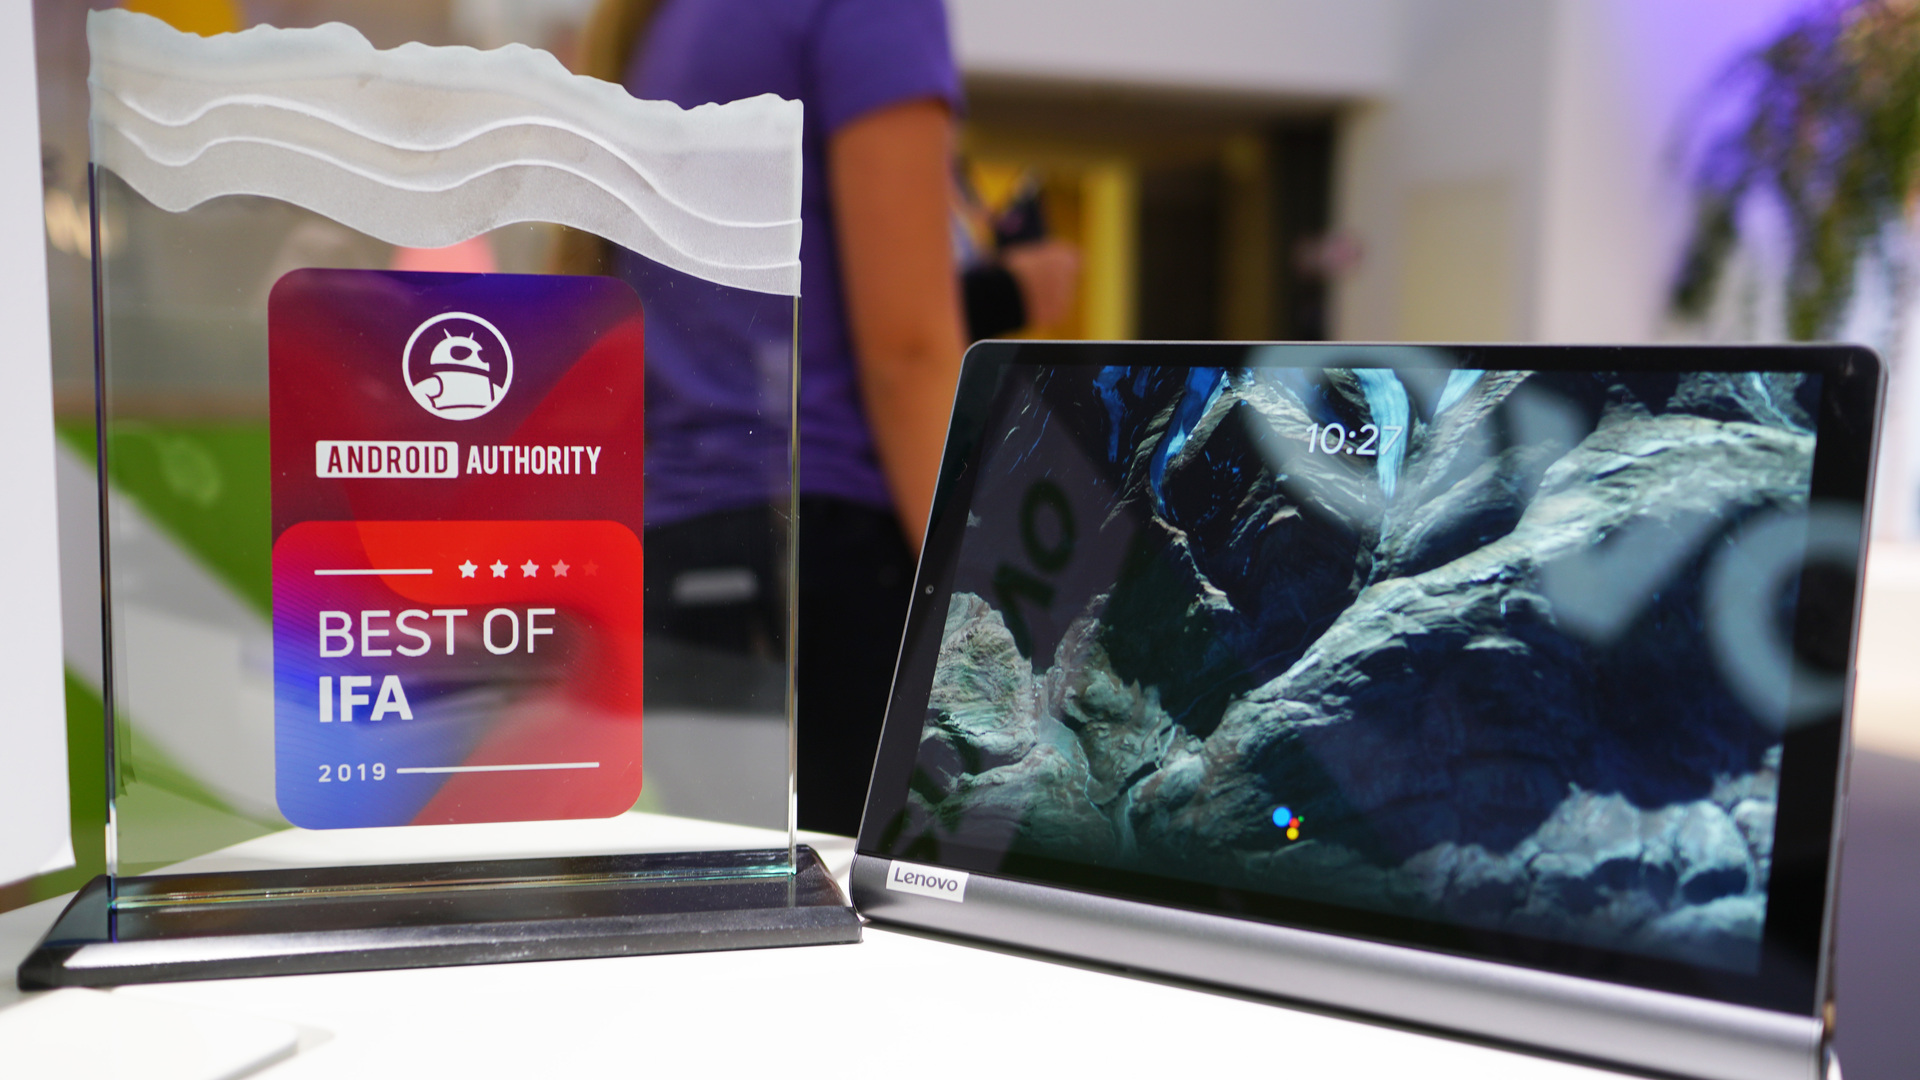 Lenovo Yoga Smart Tab Best of IFA award winner